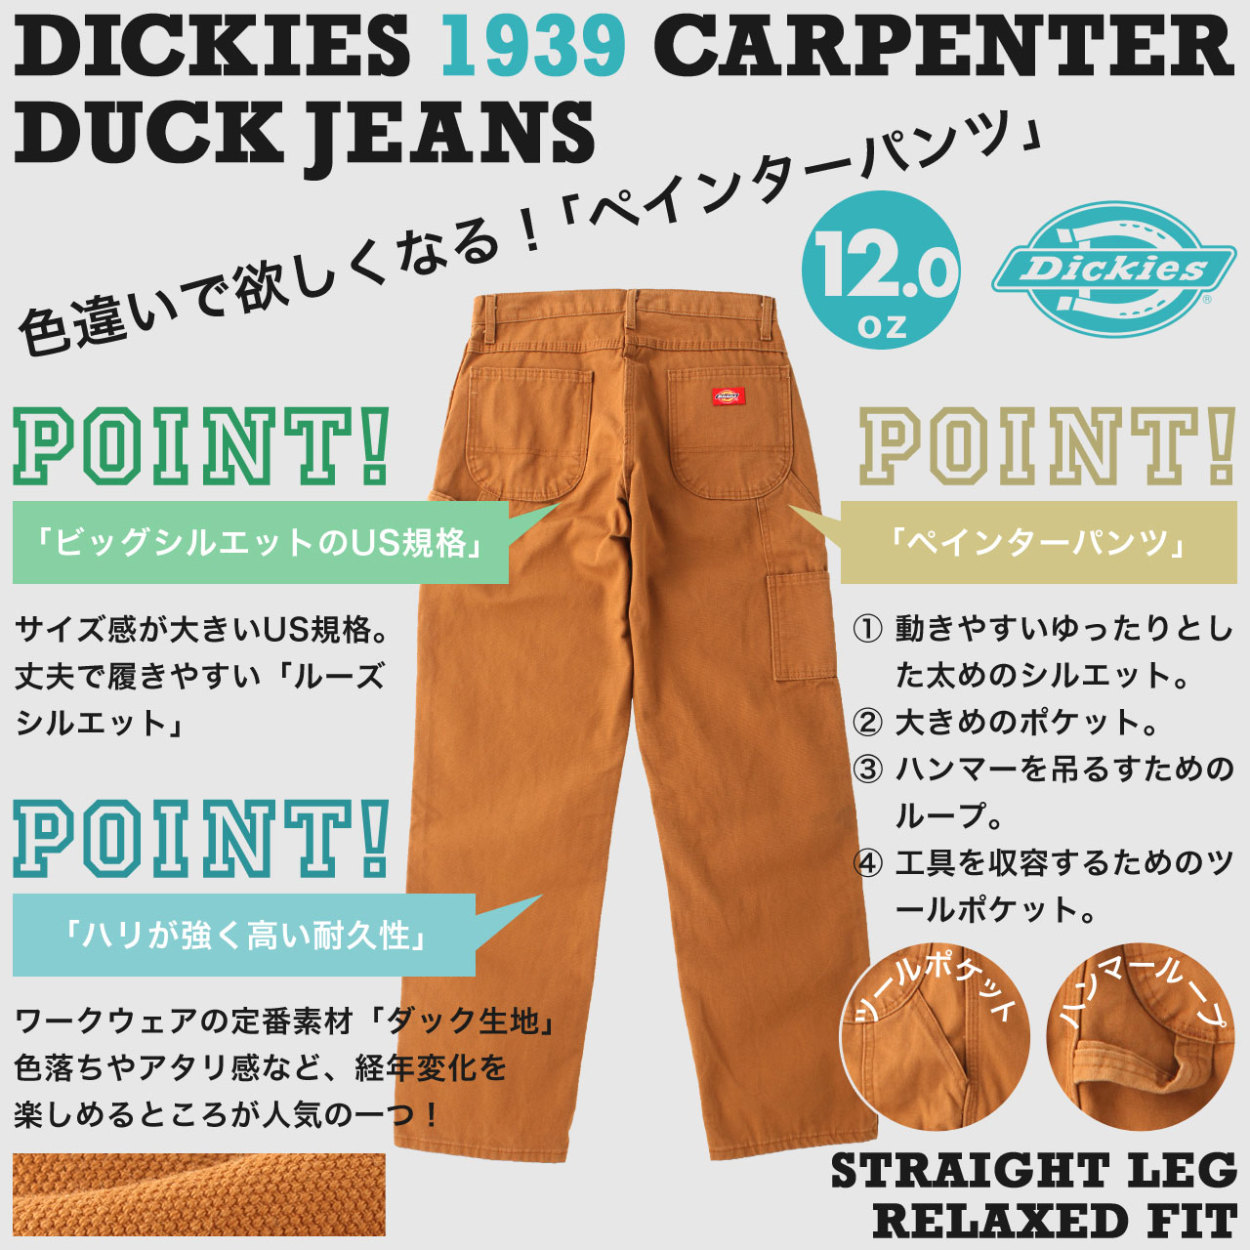 [ビッグサイズ] ディッキーズ ペインターパンツ 1939 メンズ ウエスト 46インチ 48インチ 50インチ USAモデル